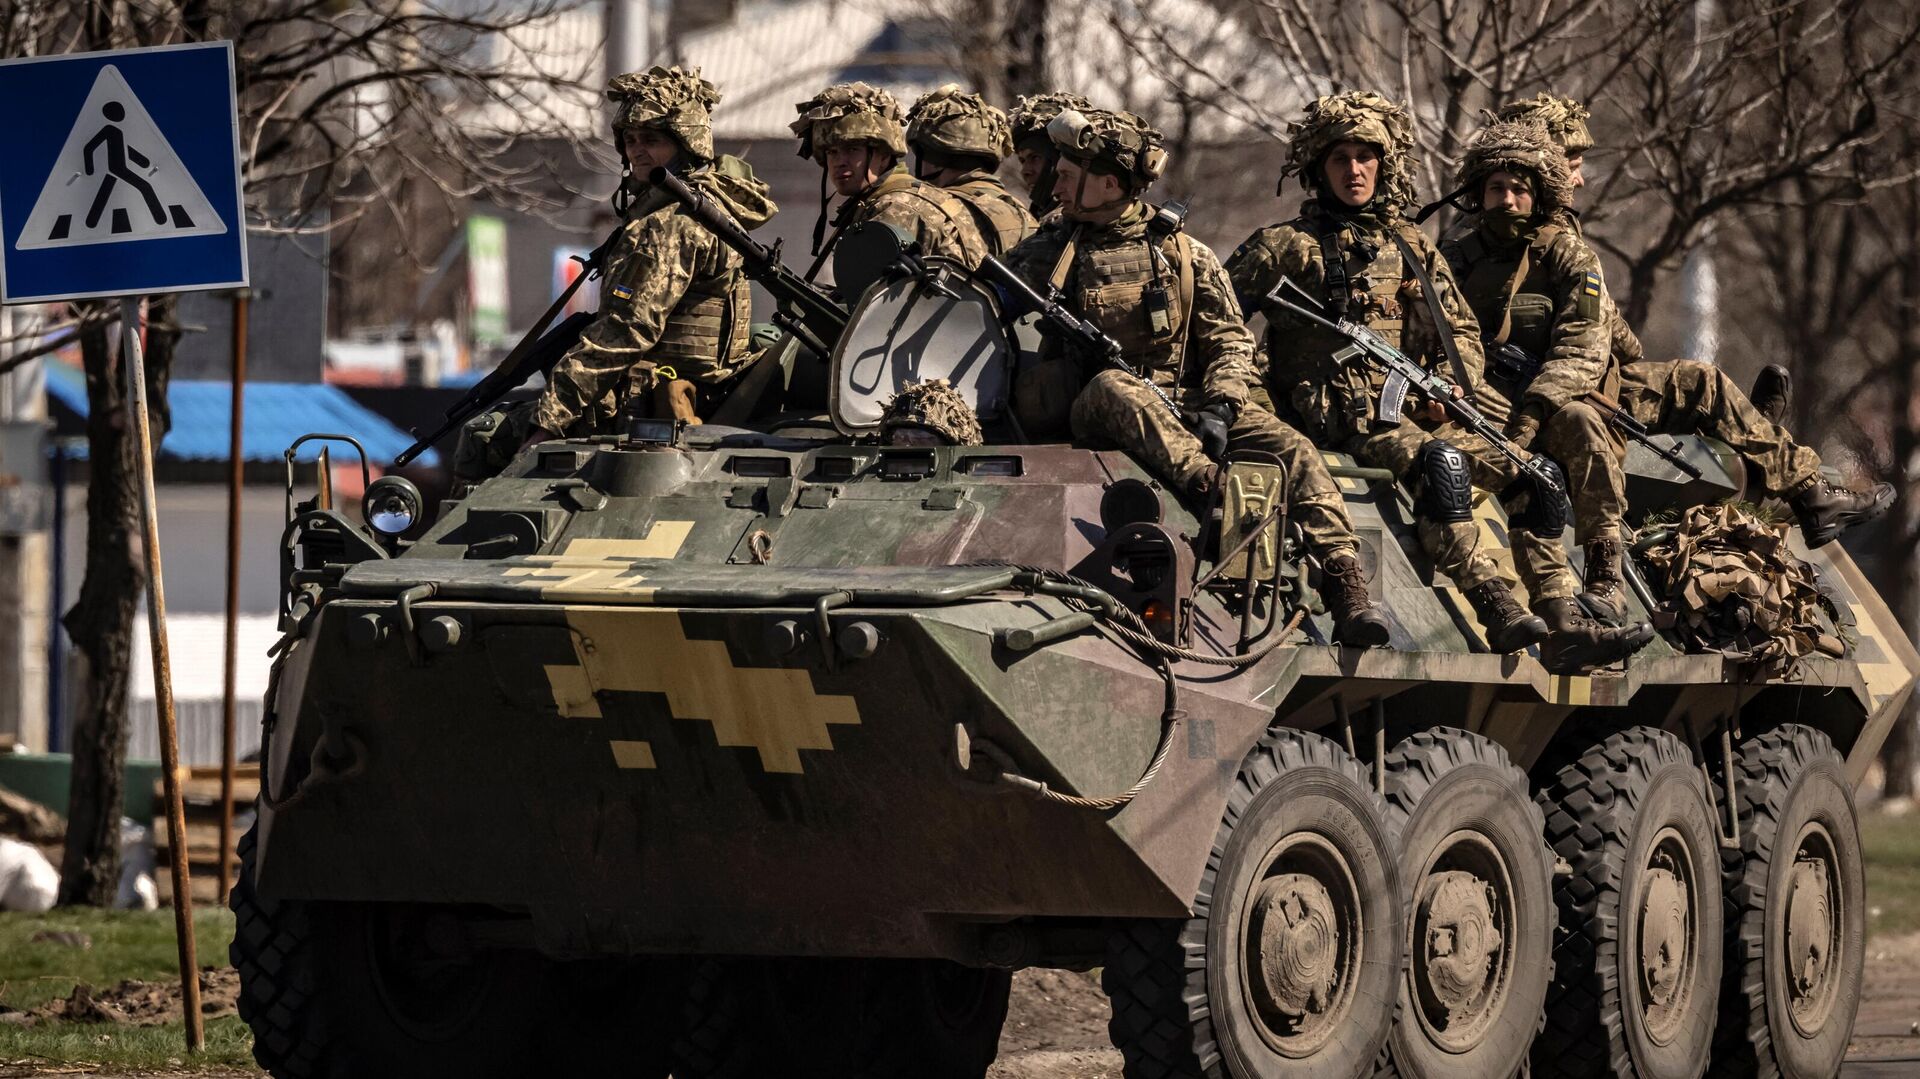 Украинские солдаты сидят на бронированной военной машине в городе Северодонецк, Донбасс, 7 апреля 2022 года. - Sputnik Узбекистан, 1920, 13.05.2022